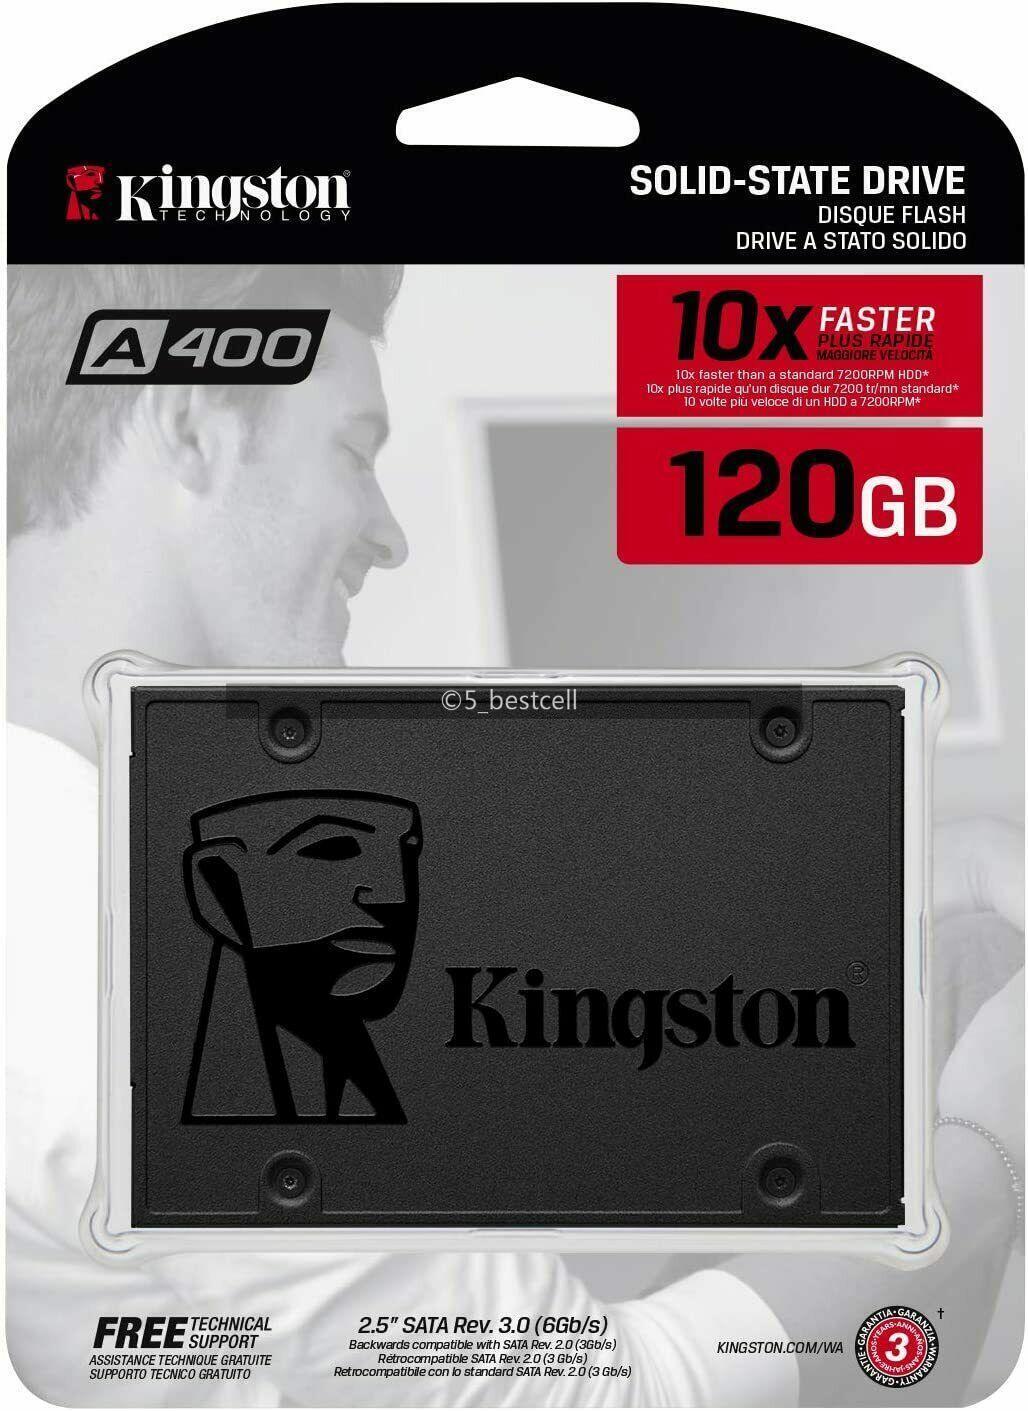 Kingston SSD 120GB 240GB 480GB 960GB SATA III 2.5 Internal Solid State Drive lot